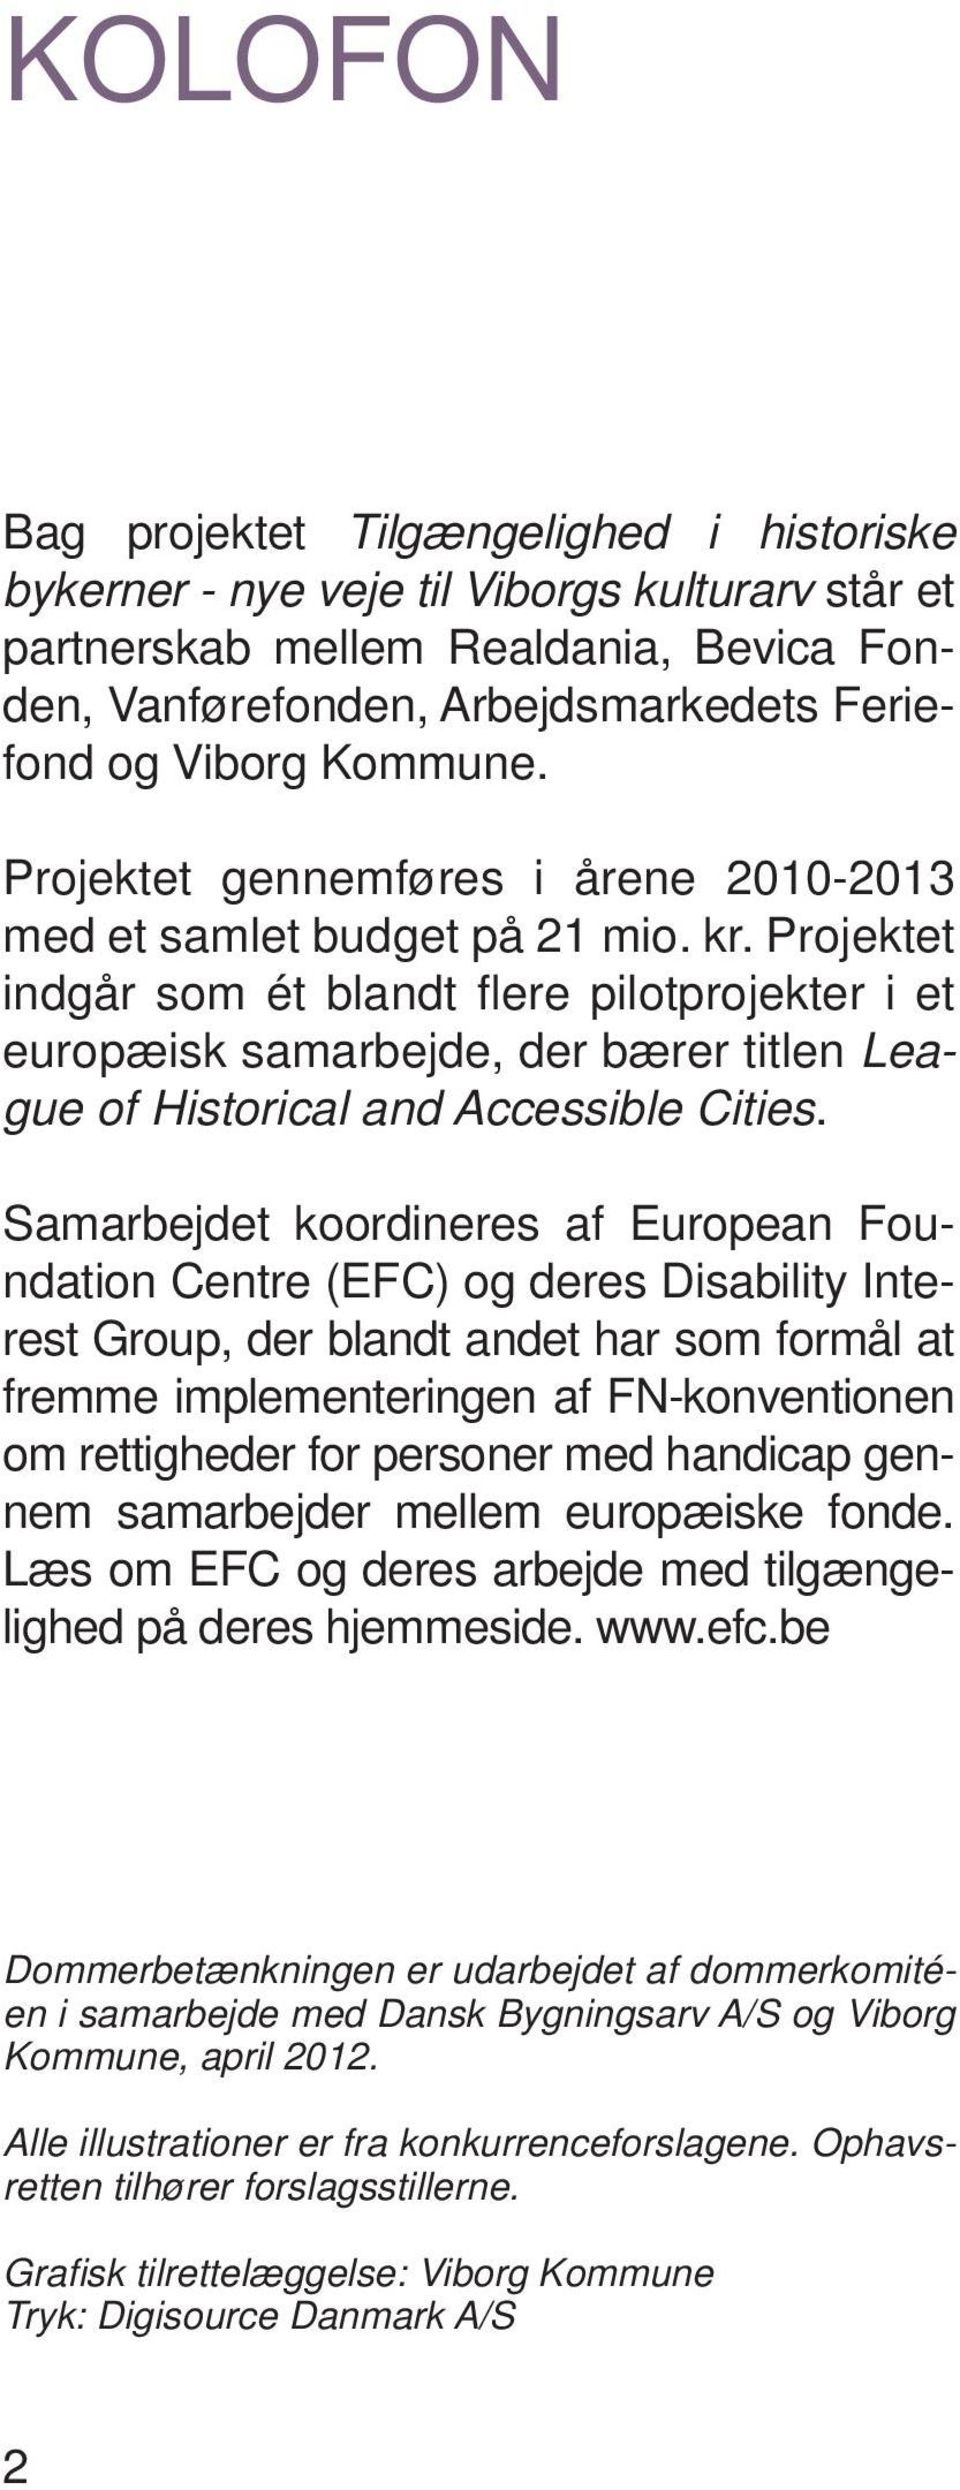 Projektet indgår som ét blandt fl ere pilotprojekter i et europæisk samarbejde, der bærer titlen League of Historical and Accessible Cities.